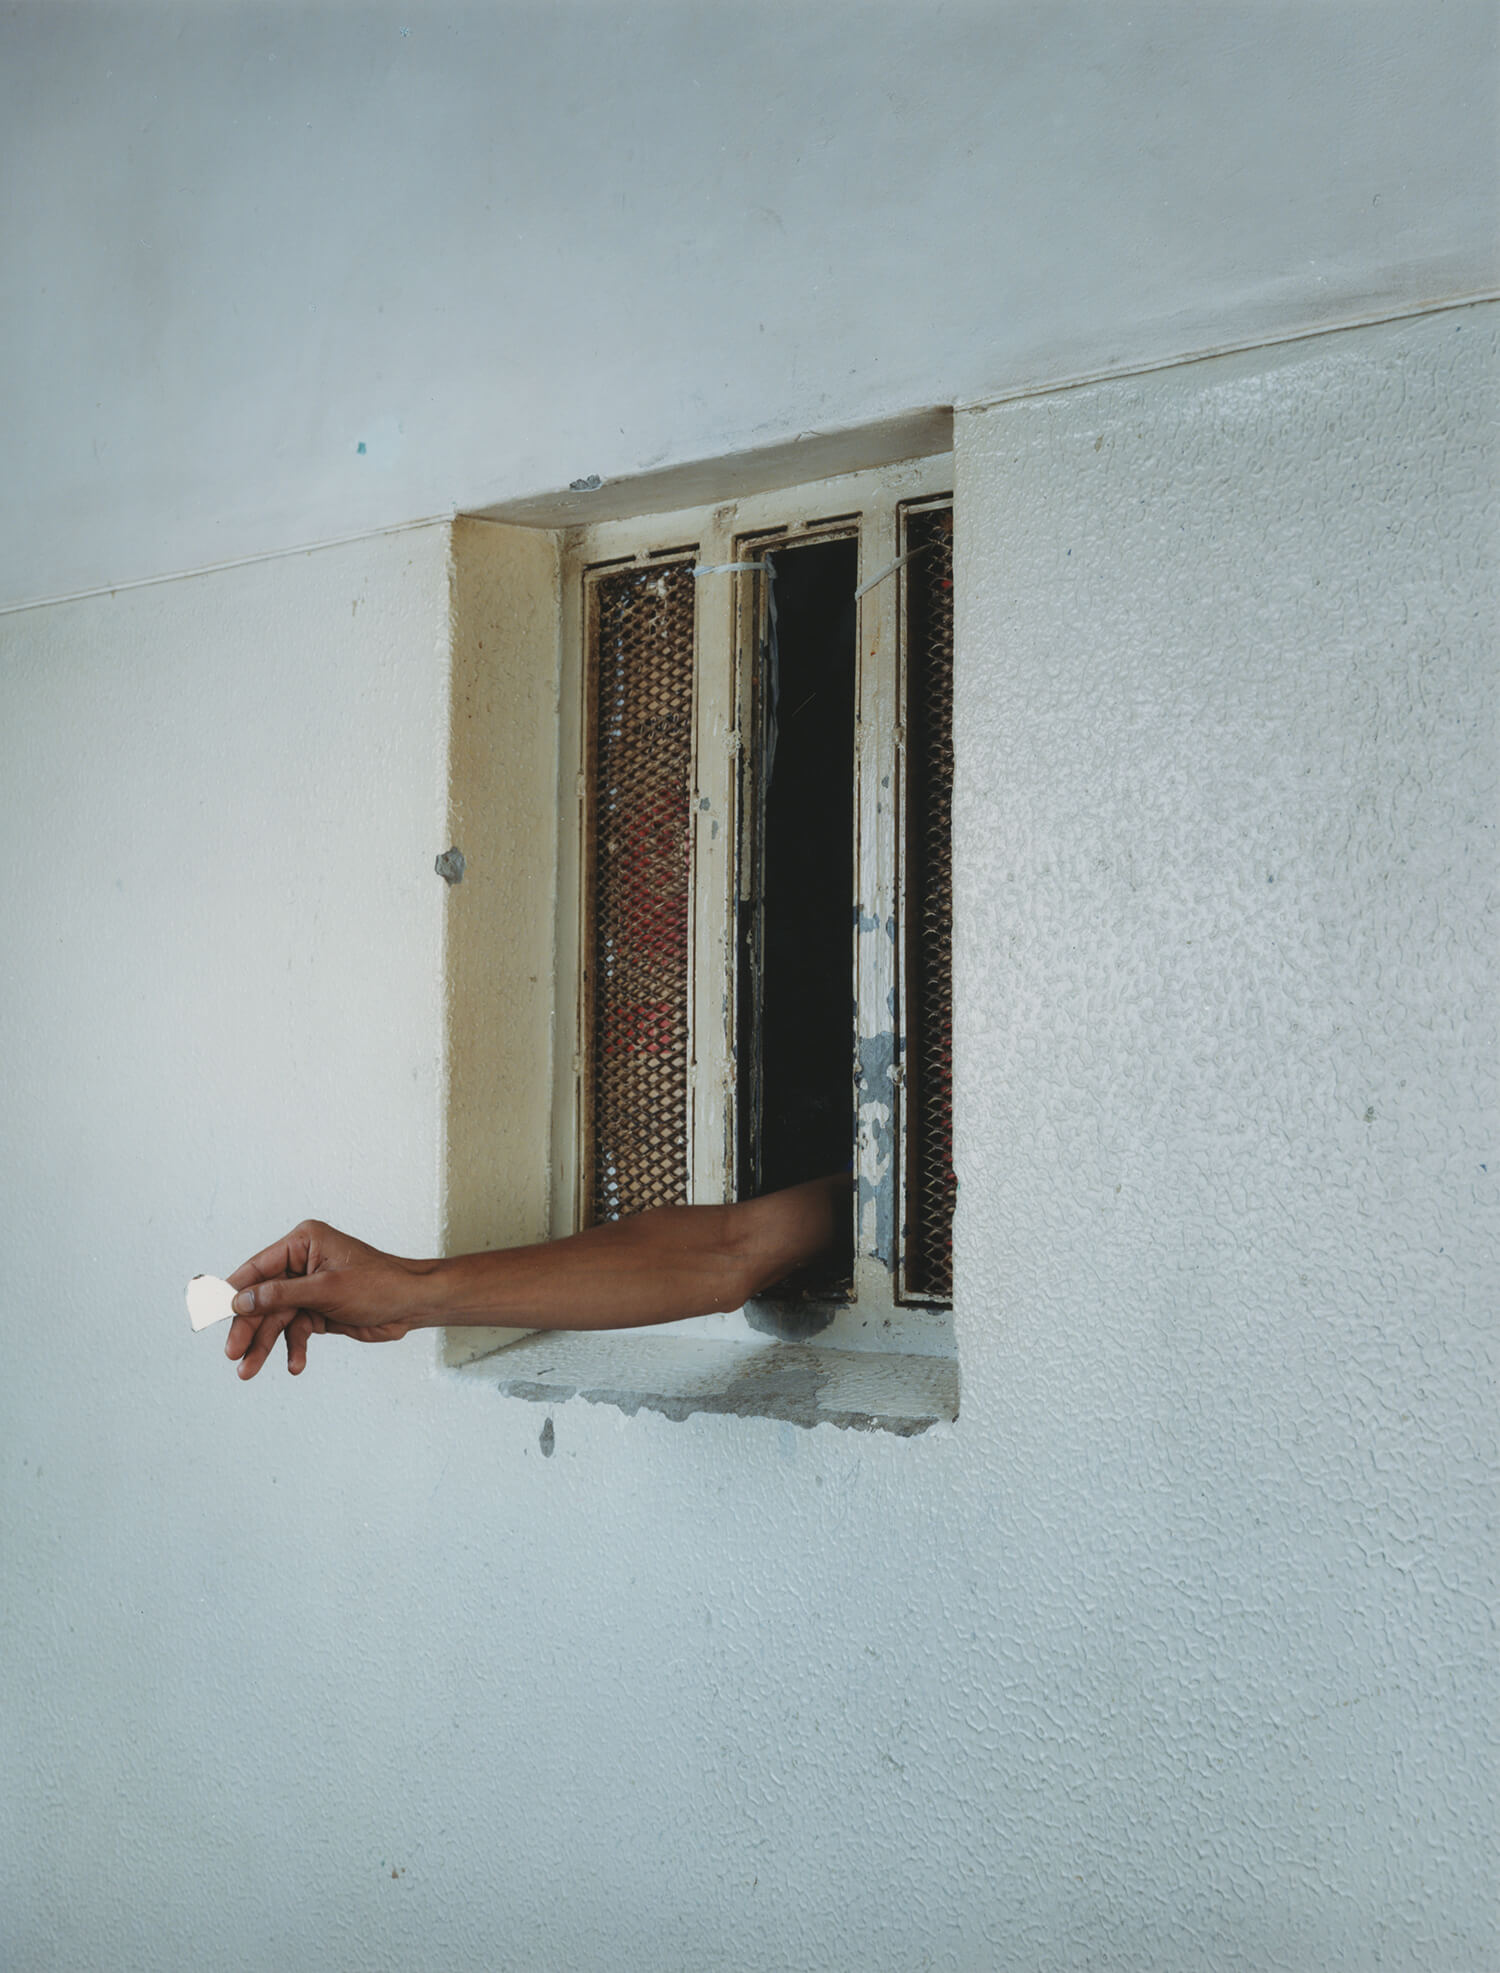  Pollsmoor Maximum Security Prison, South Africa, C-type print, 16 x 20 inches, 2003 